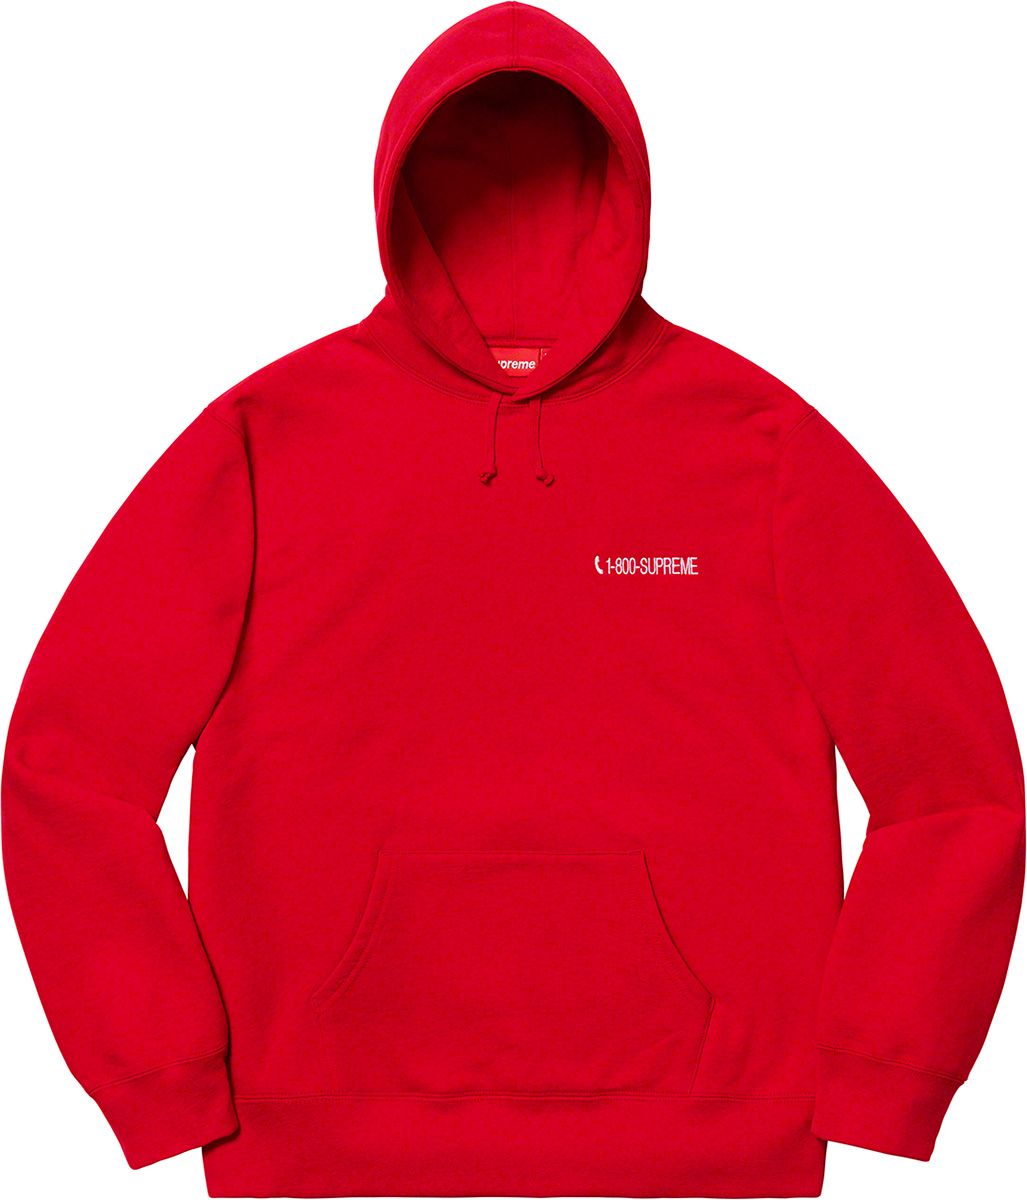 1-800 Hooded Sweatshirt – Supreme